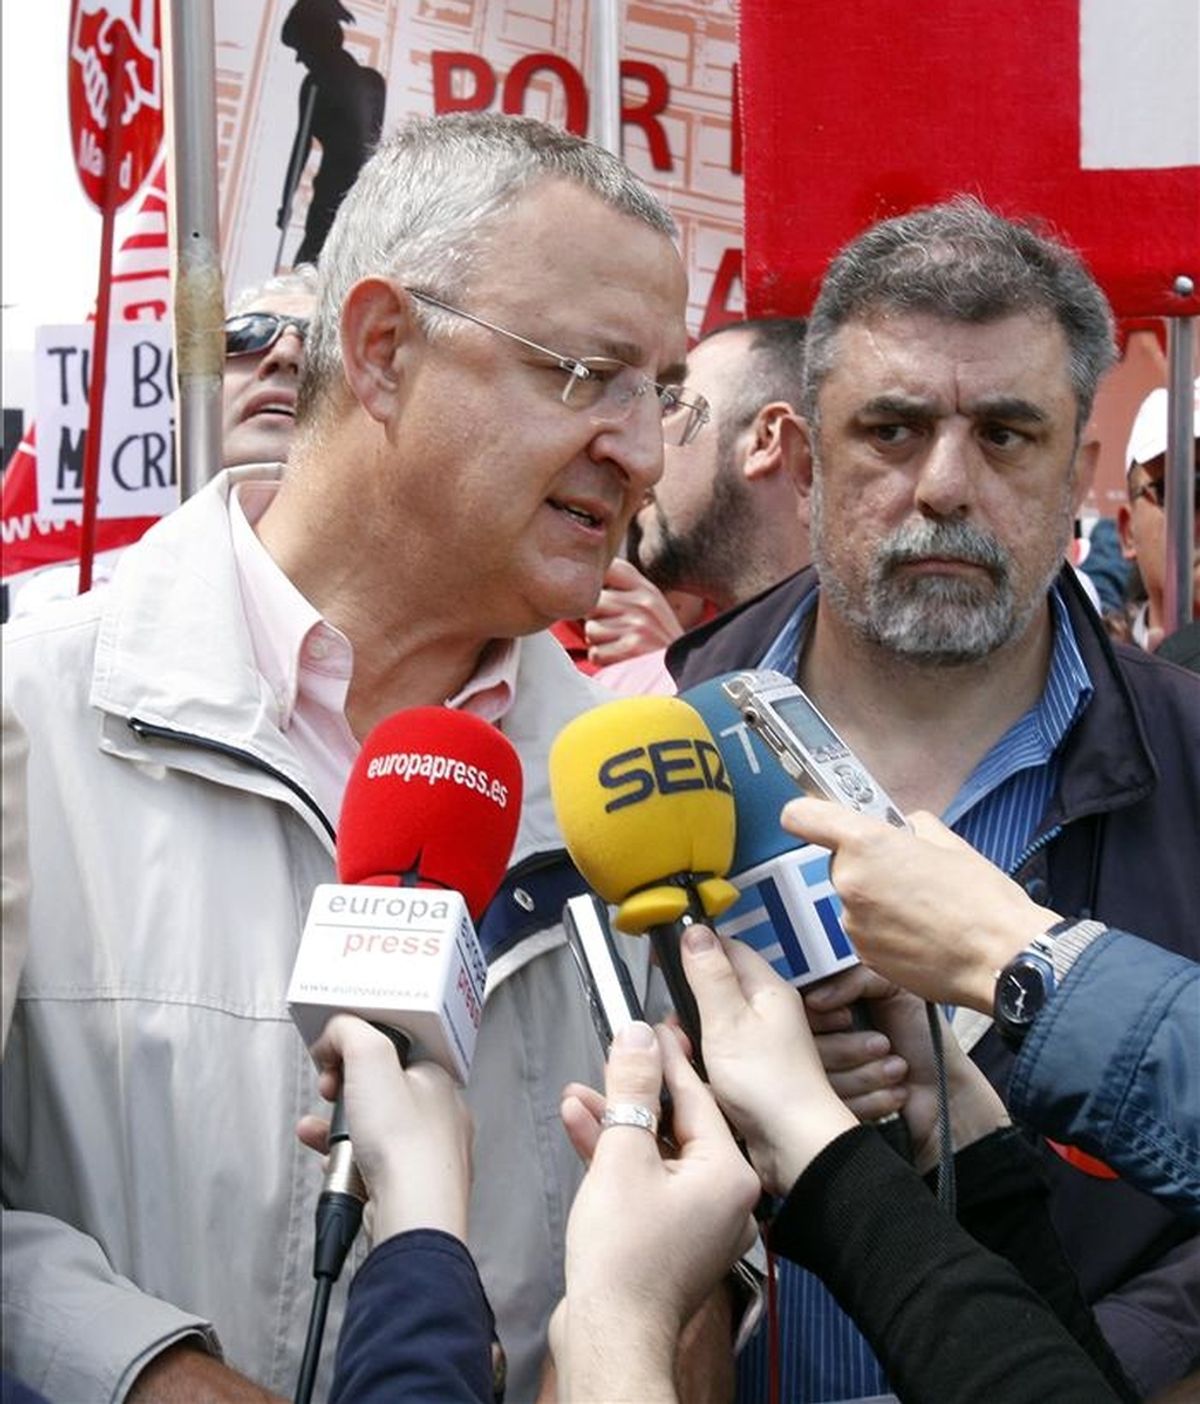 El diputado del PSOE Jesús Caldera atiende a los periodistas antes del comienzo de la manifestación del primero de mayo en Madrid, celebrada bajo el lema "Empleo con derechos. Contra los recortes sociales". EFE